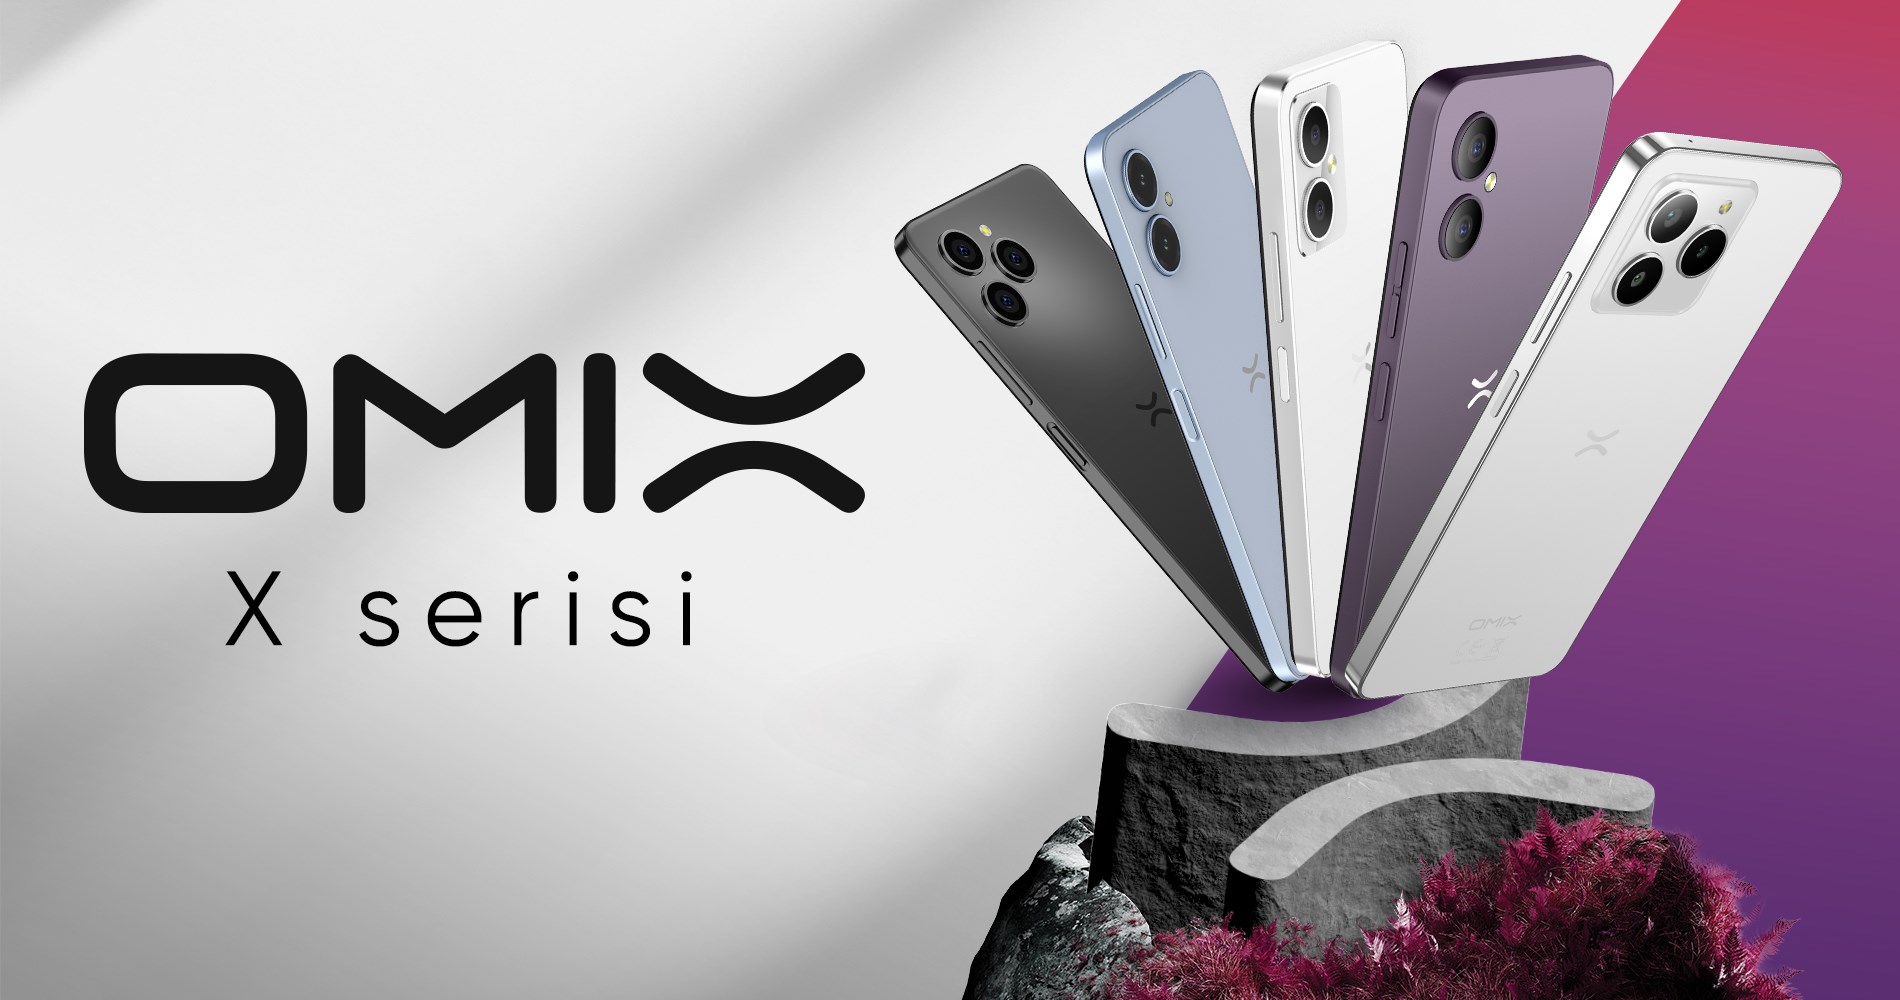 OMIX X5 fiyatına göre sahip olduğu özelliklerle dikkat çekiyor